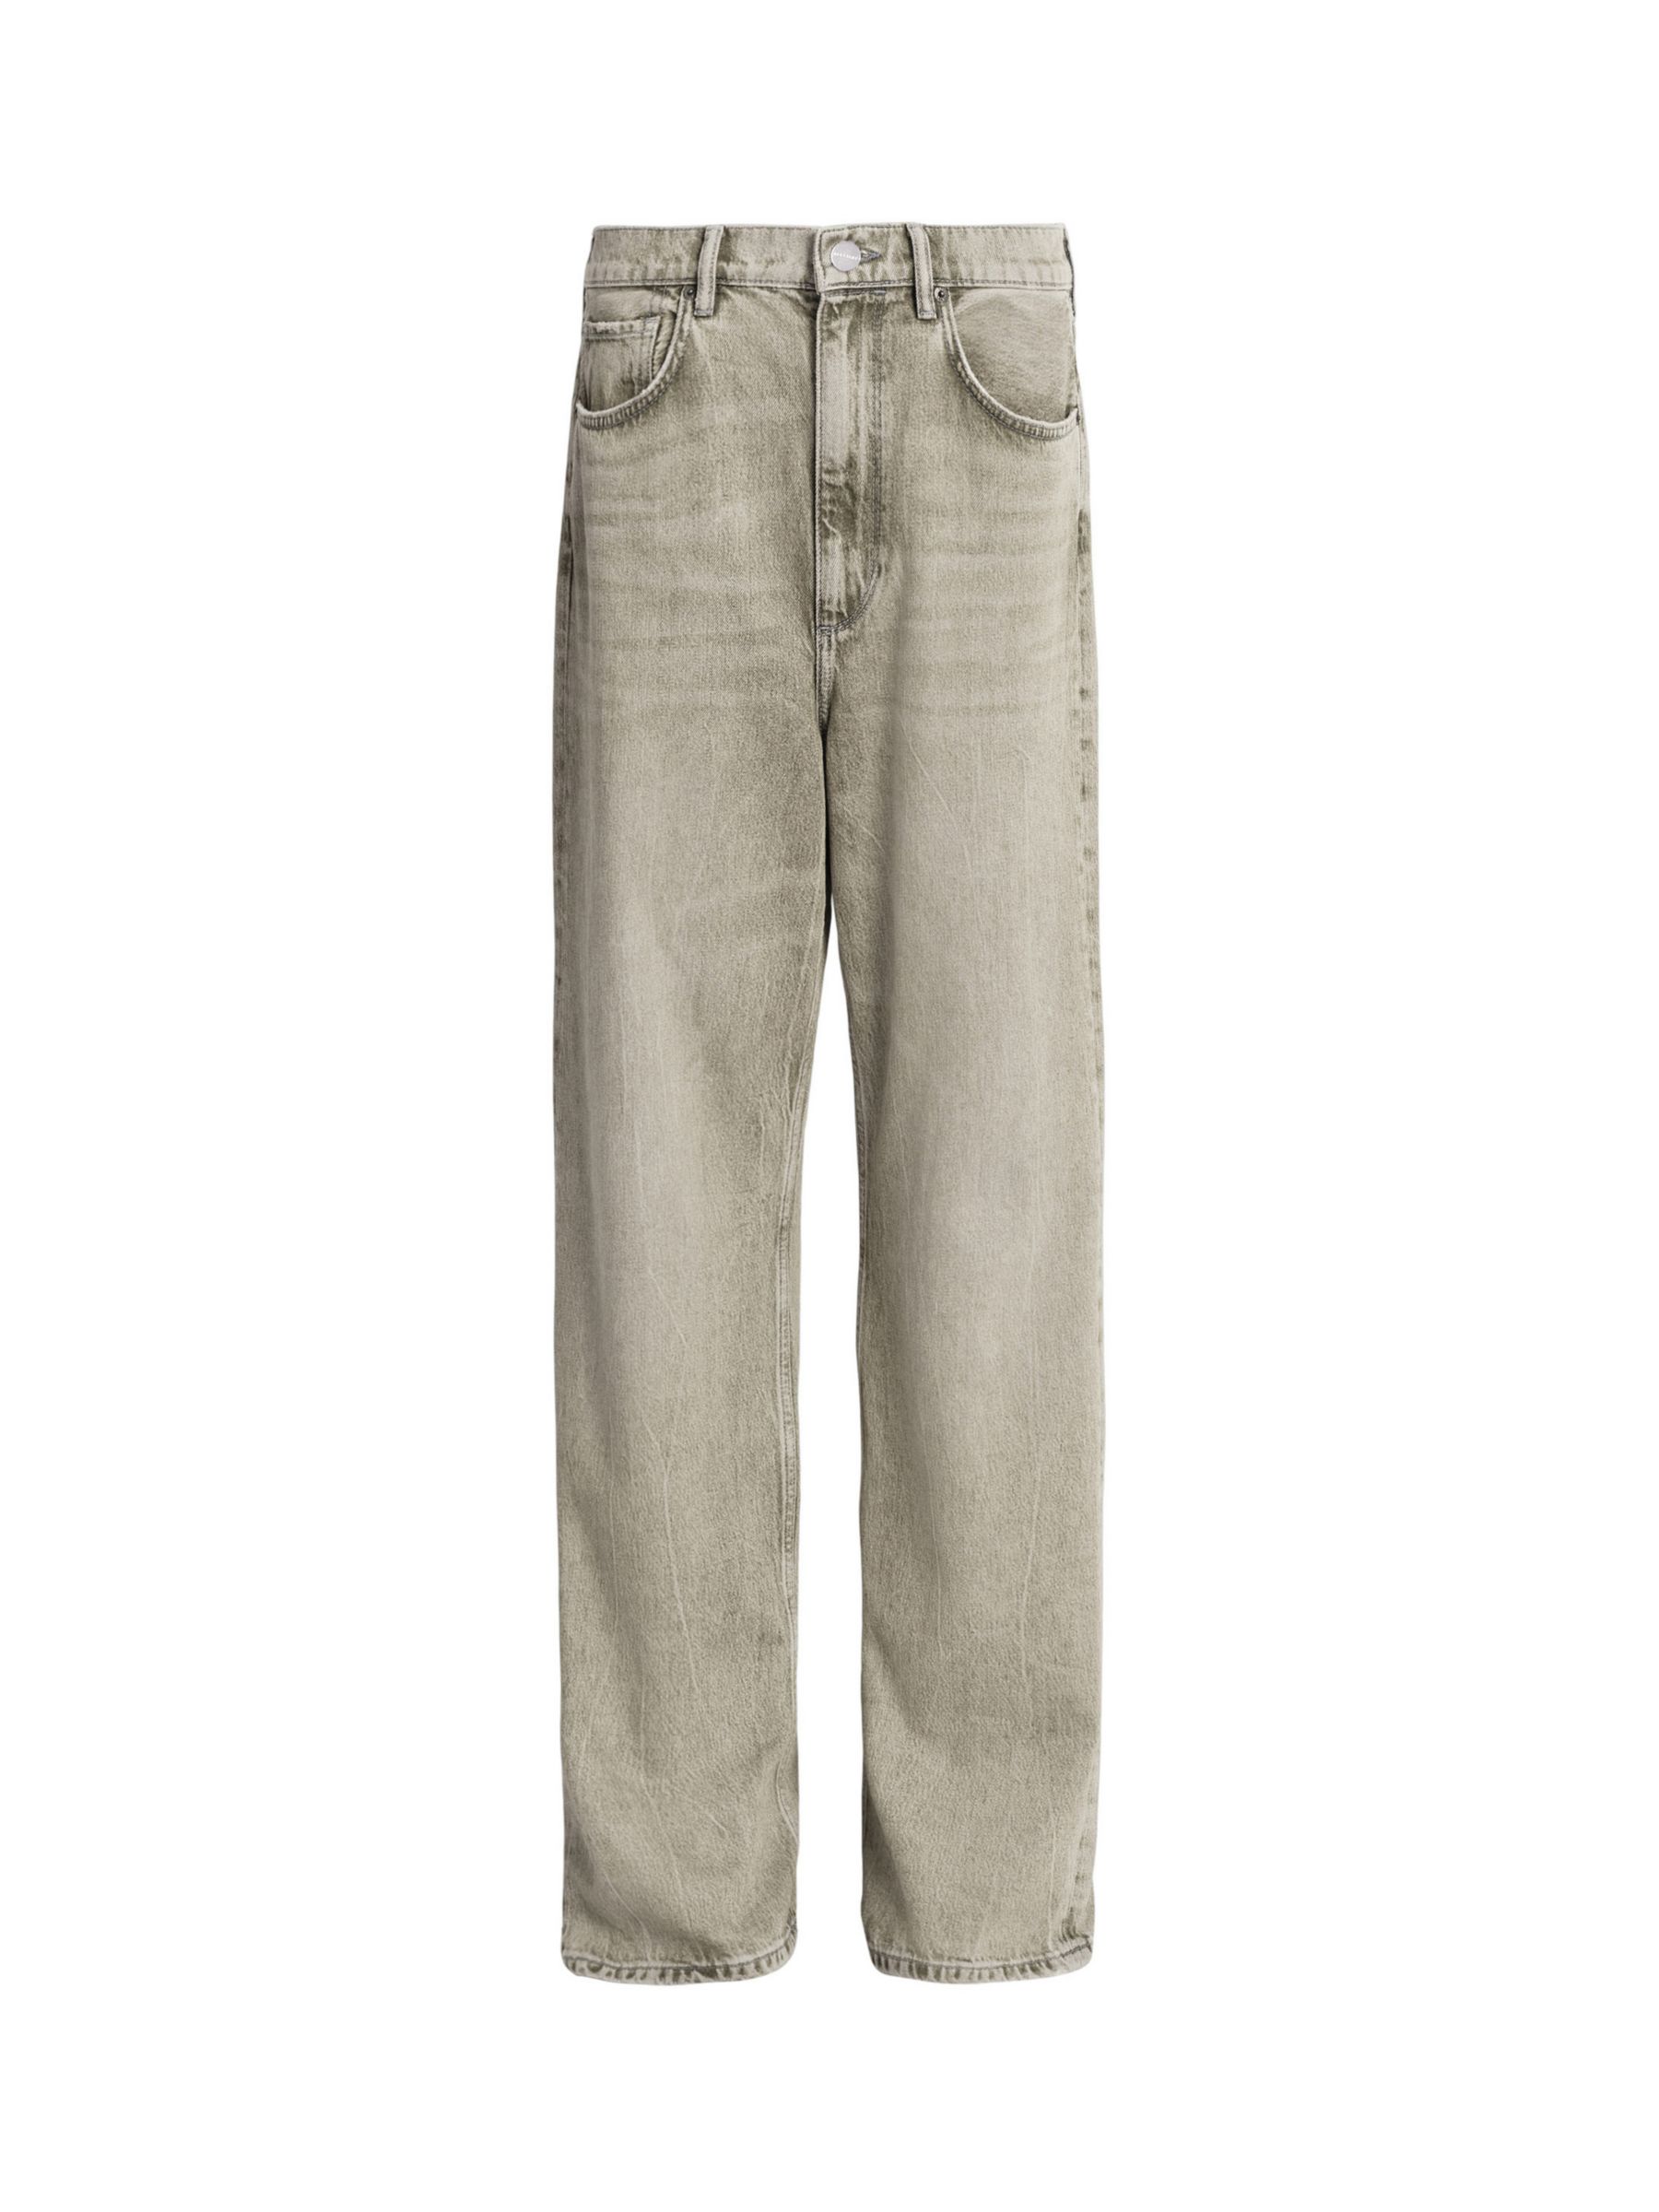 AllSaints Blake Organic Cotton Wide Leg Jeans, Sand Grey, 26